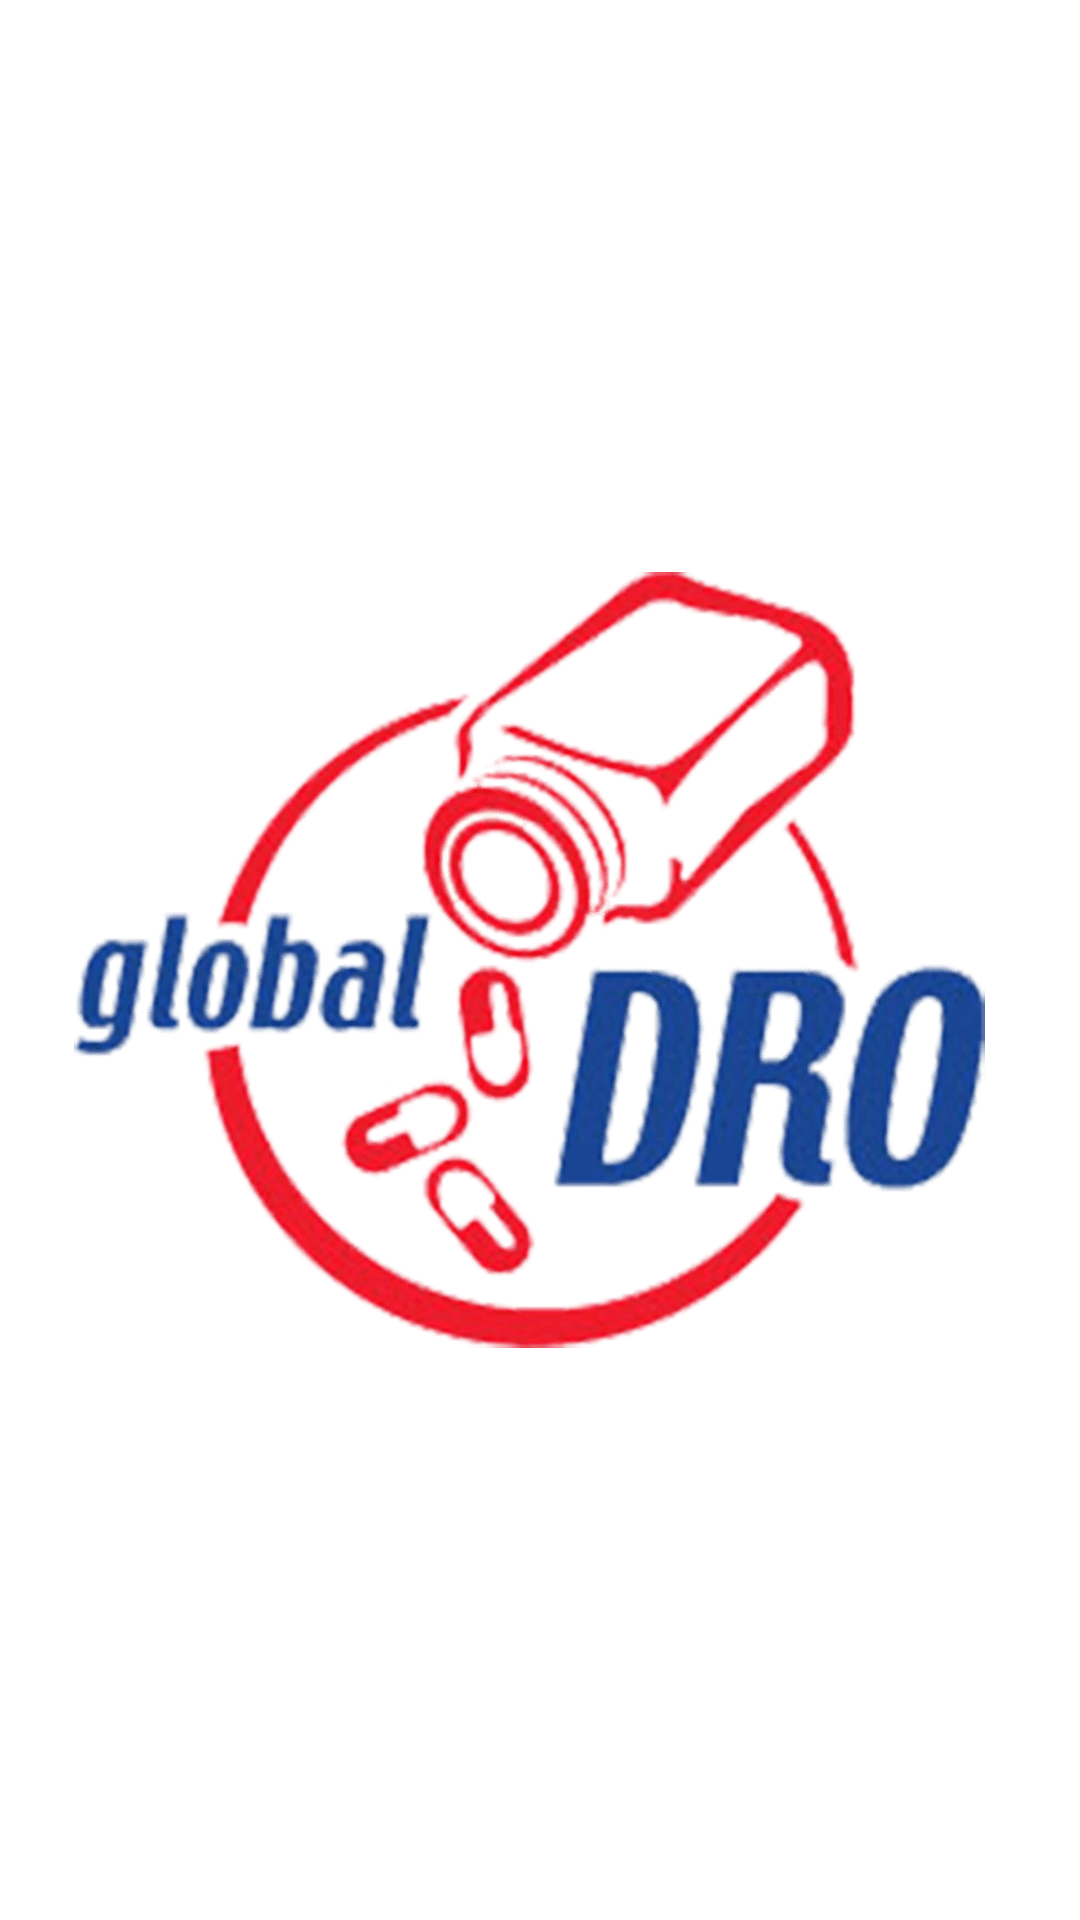 Logo for Global Dro